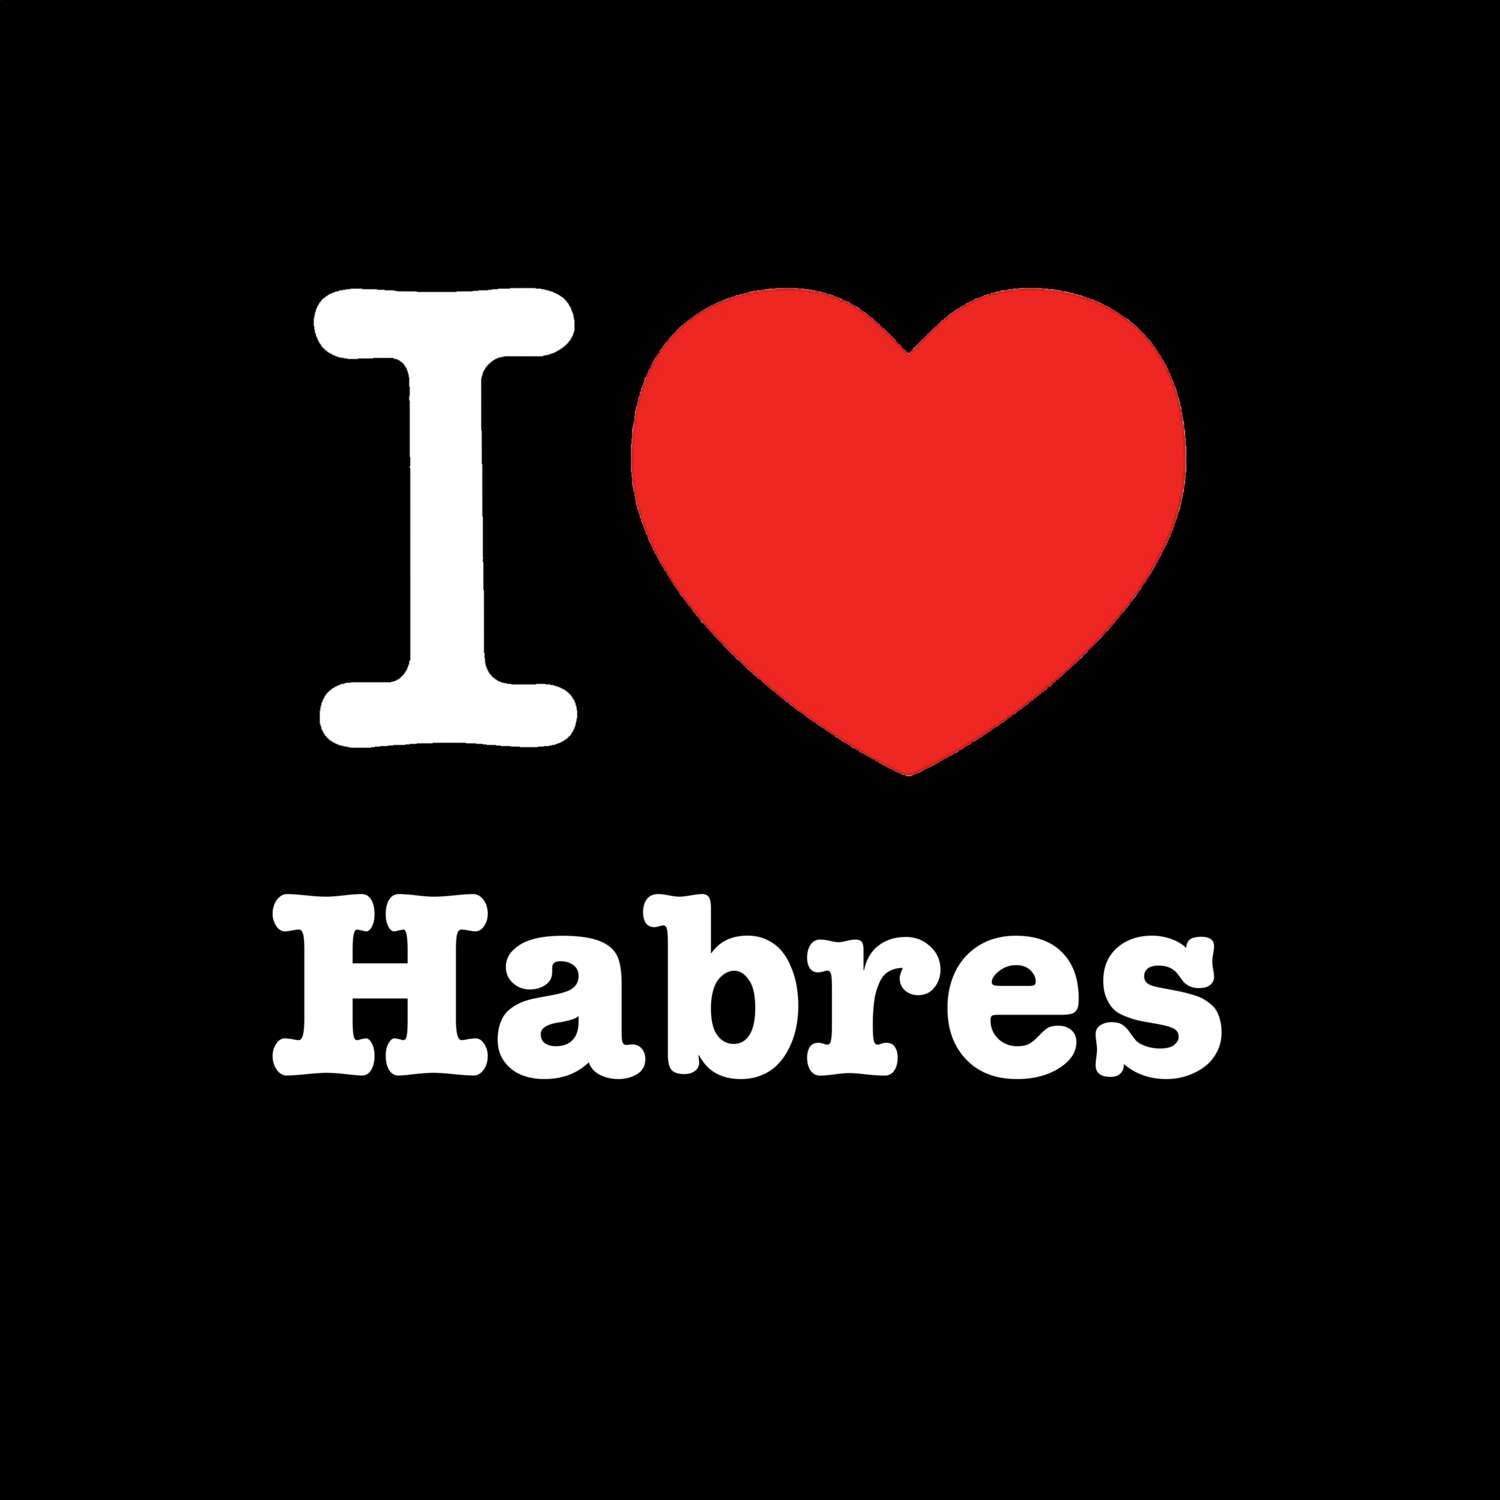 Habres T-Shirt »I love«